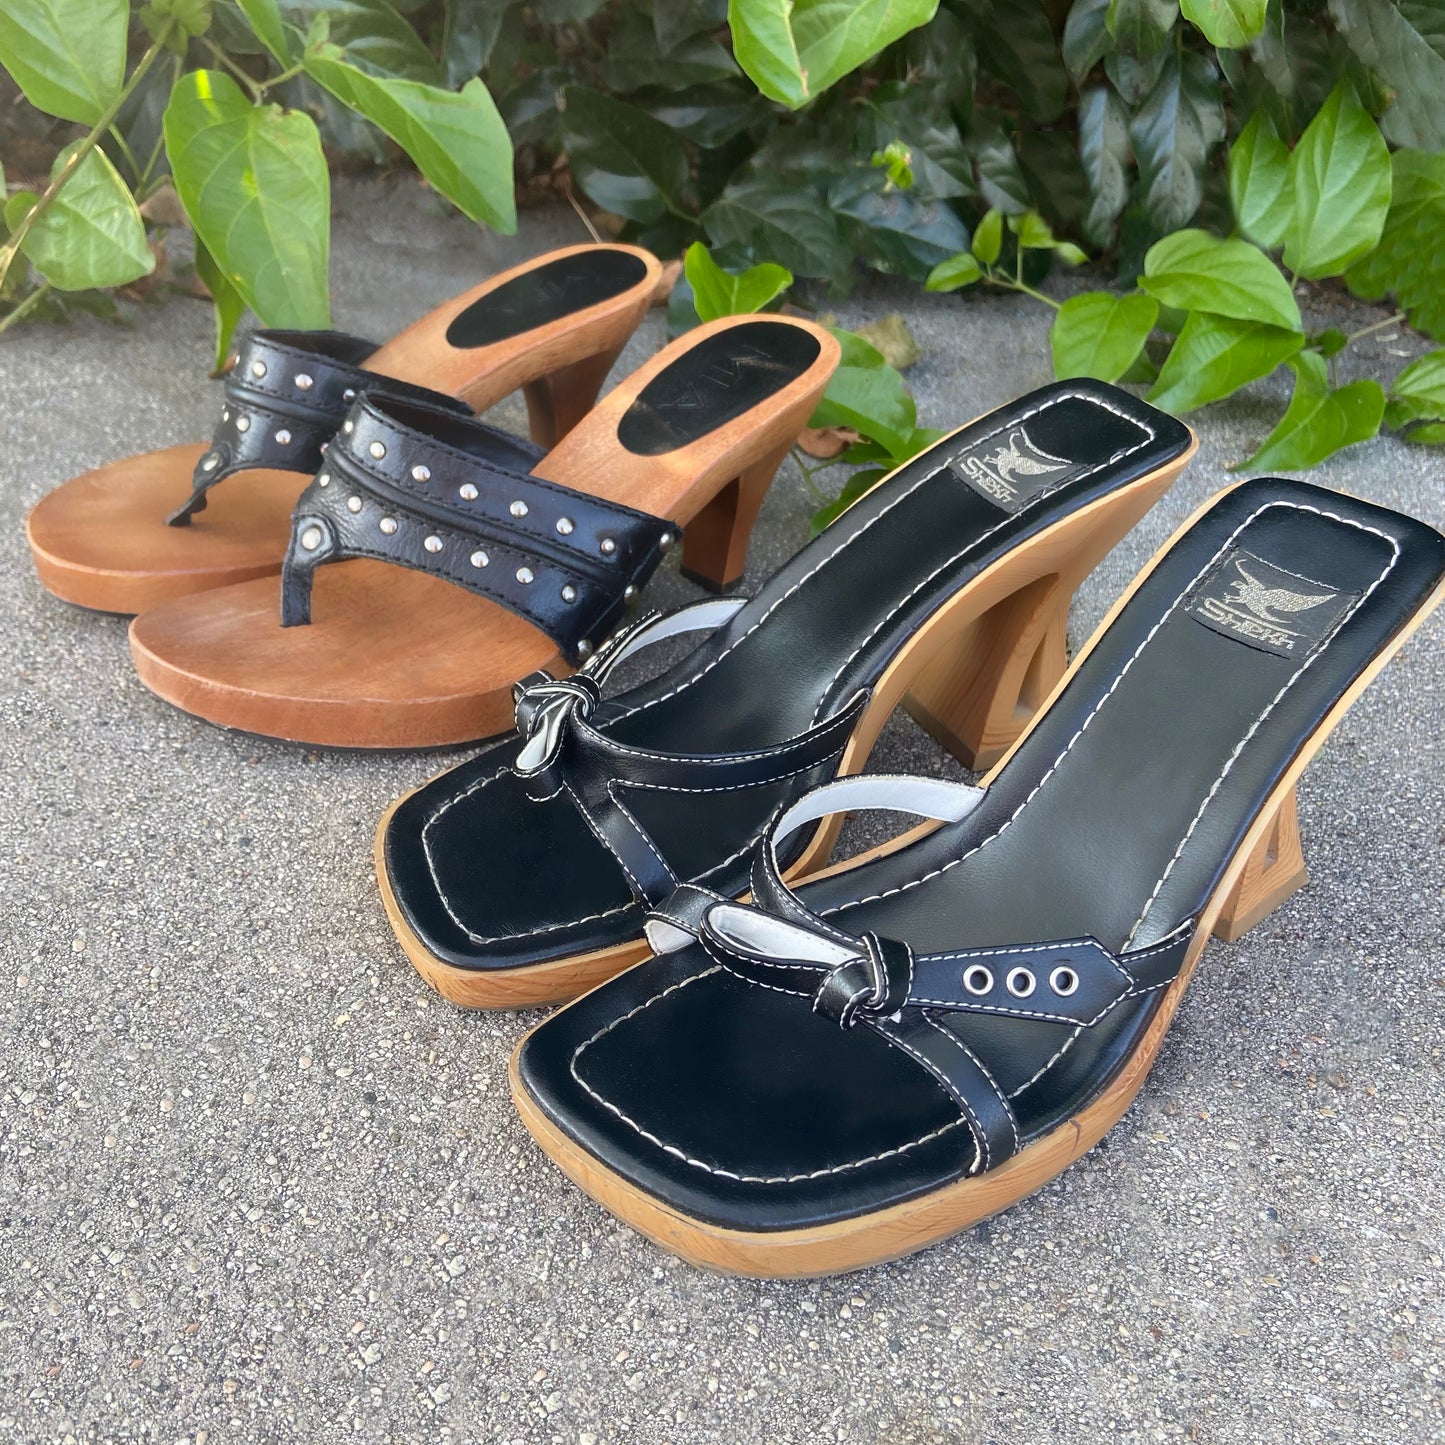 Black Heeled Stud Sandals - 6.5/7